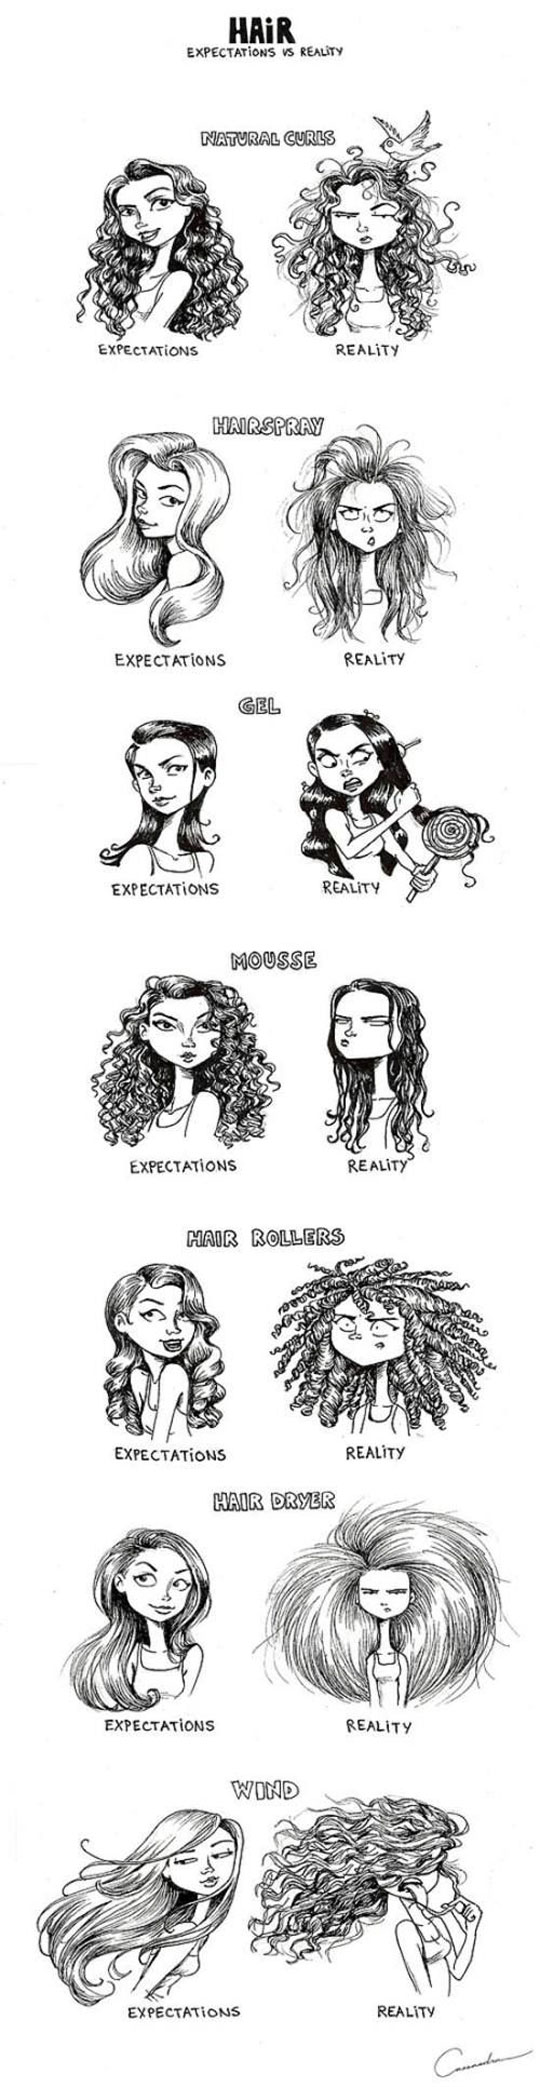 Hair - Expectations vs Reality